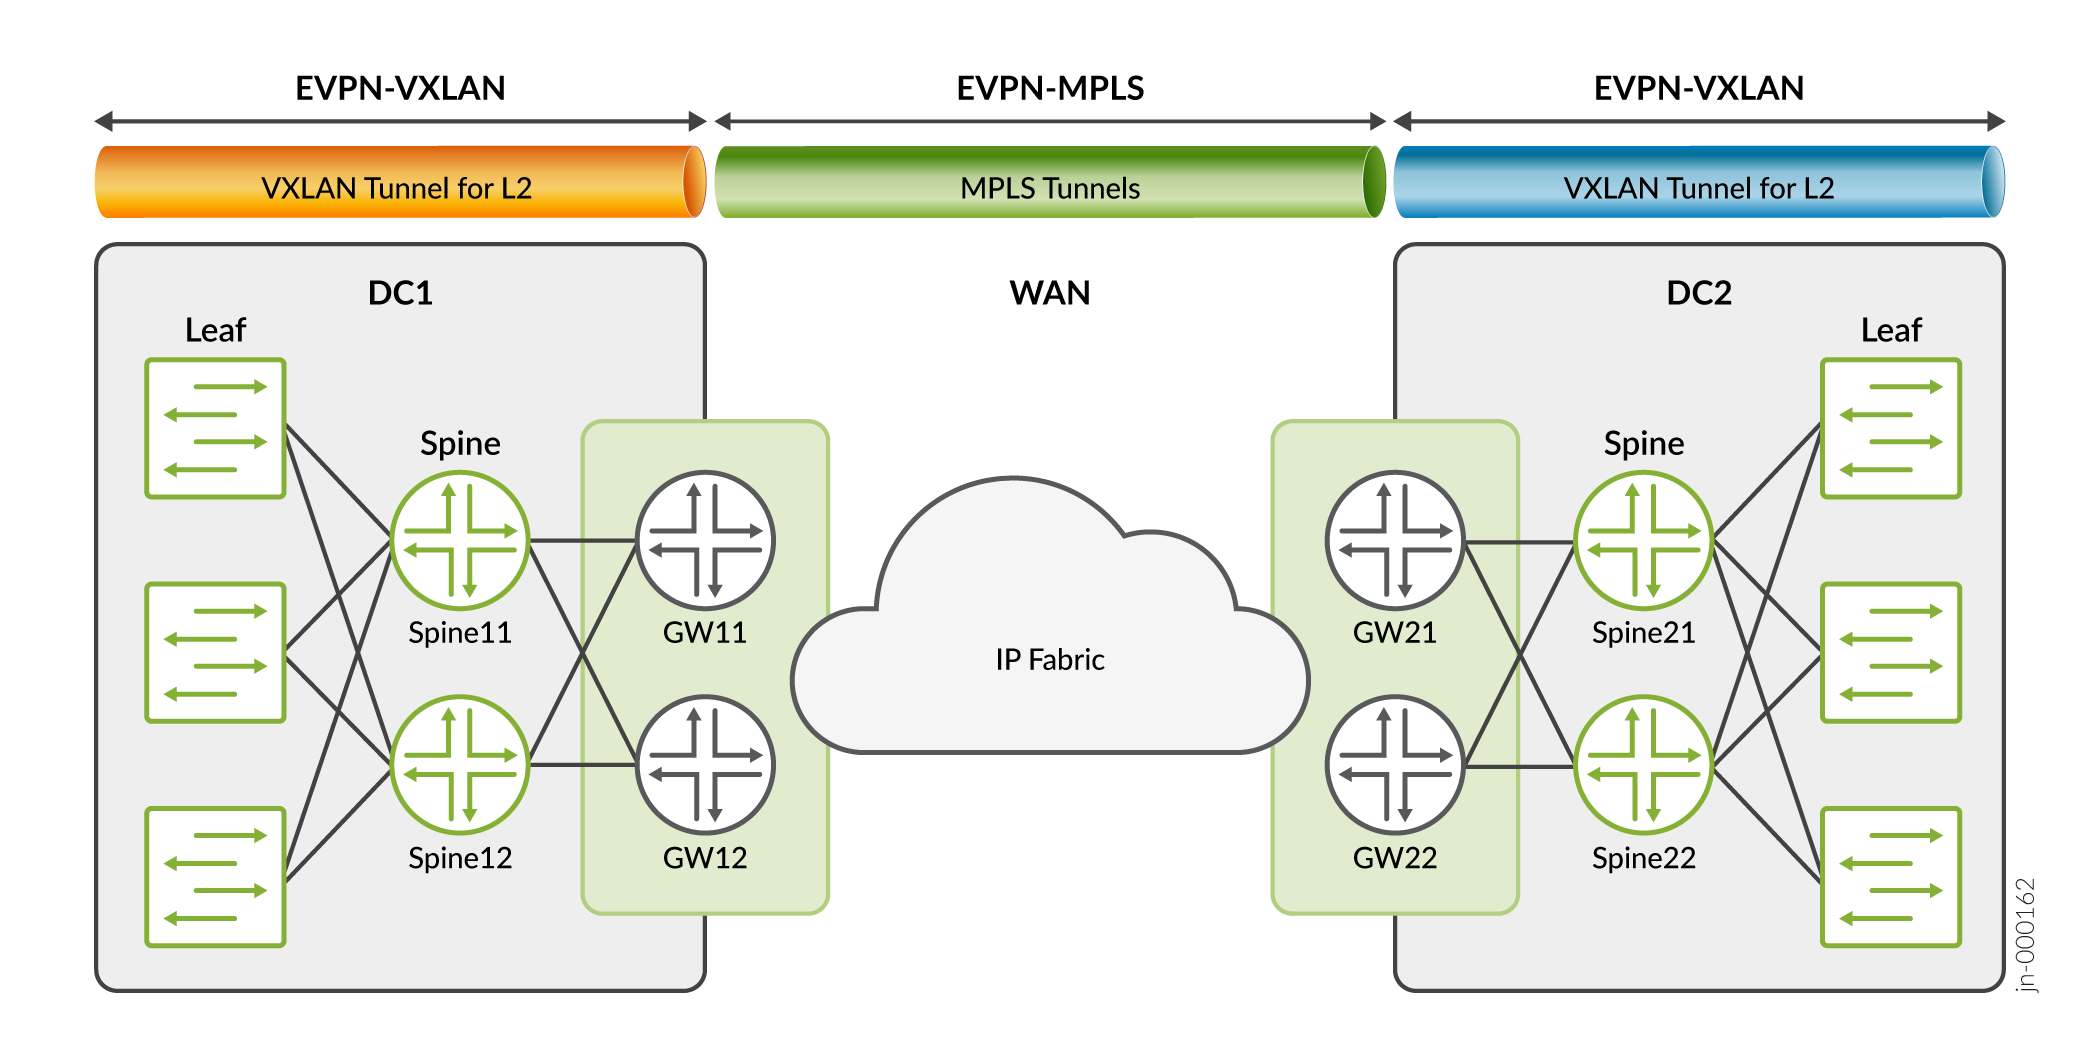 EVPN-VXLAN Data Center to EVPN-MPLS to EVPN-VXLAN Data Center